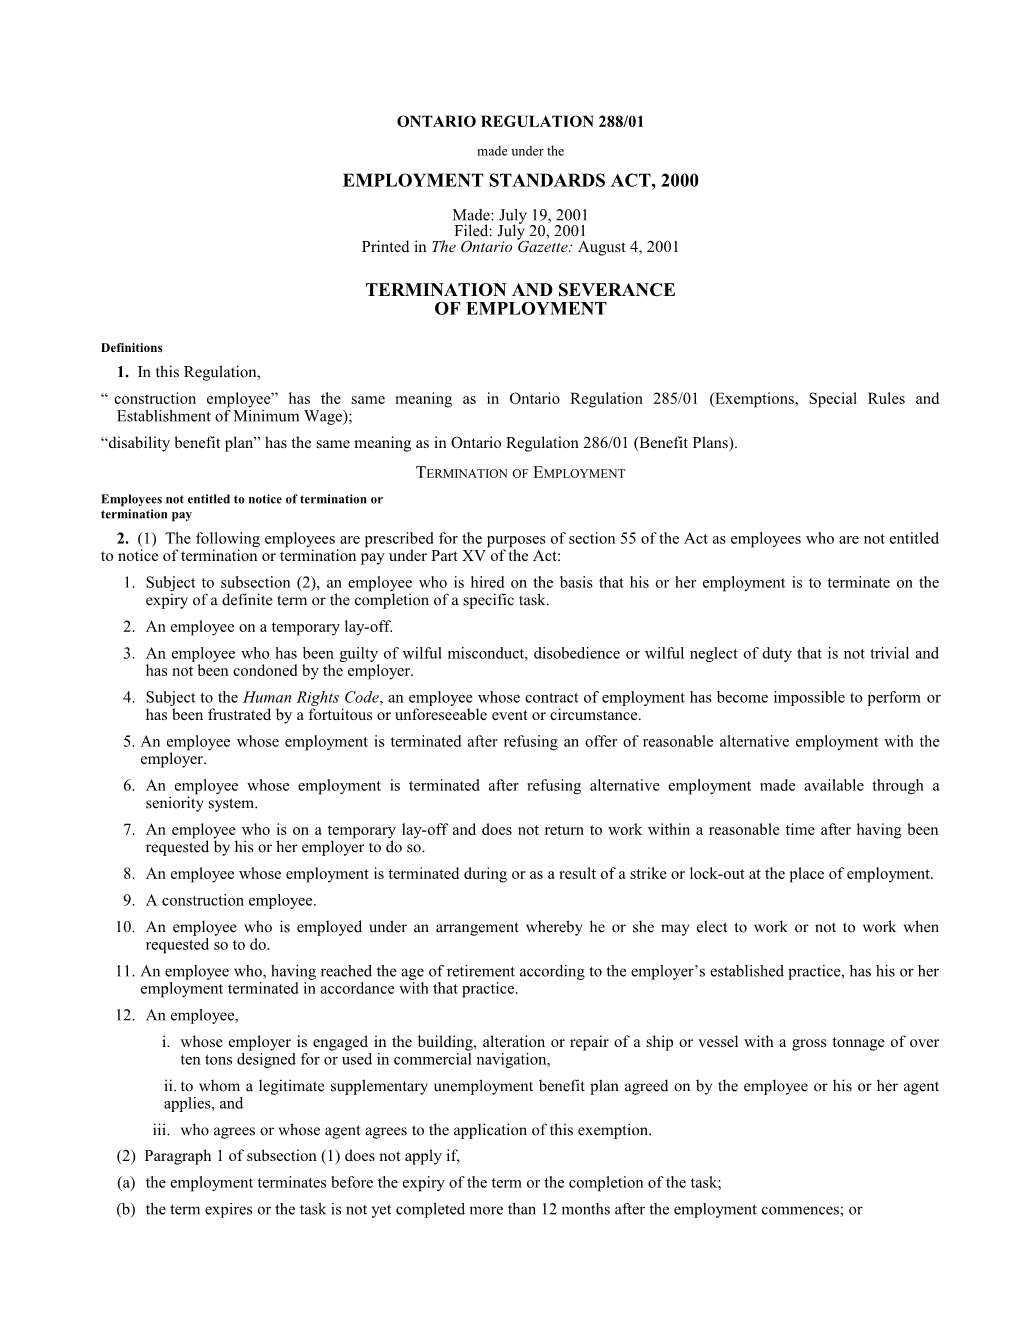 EMPLOYMENT STANDARDS ACT, 2000 - O. Reg. 288/01